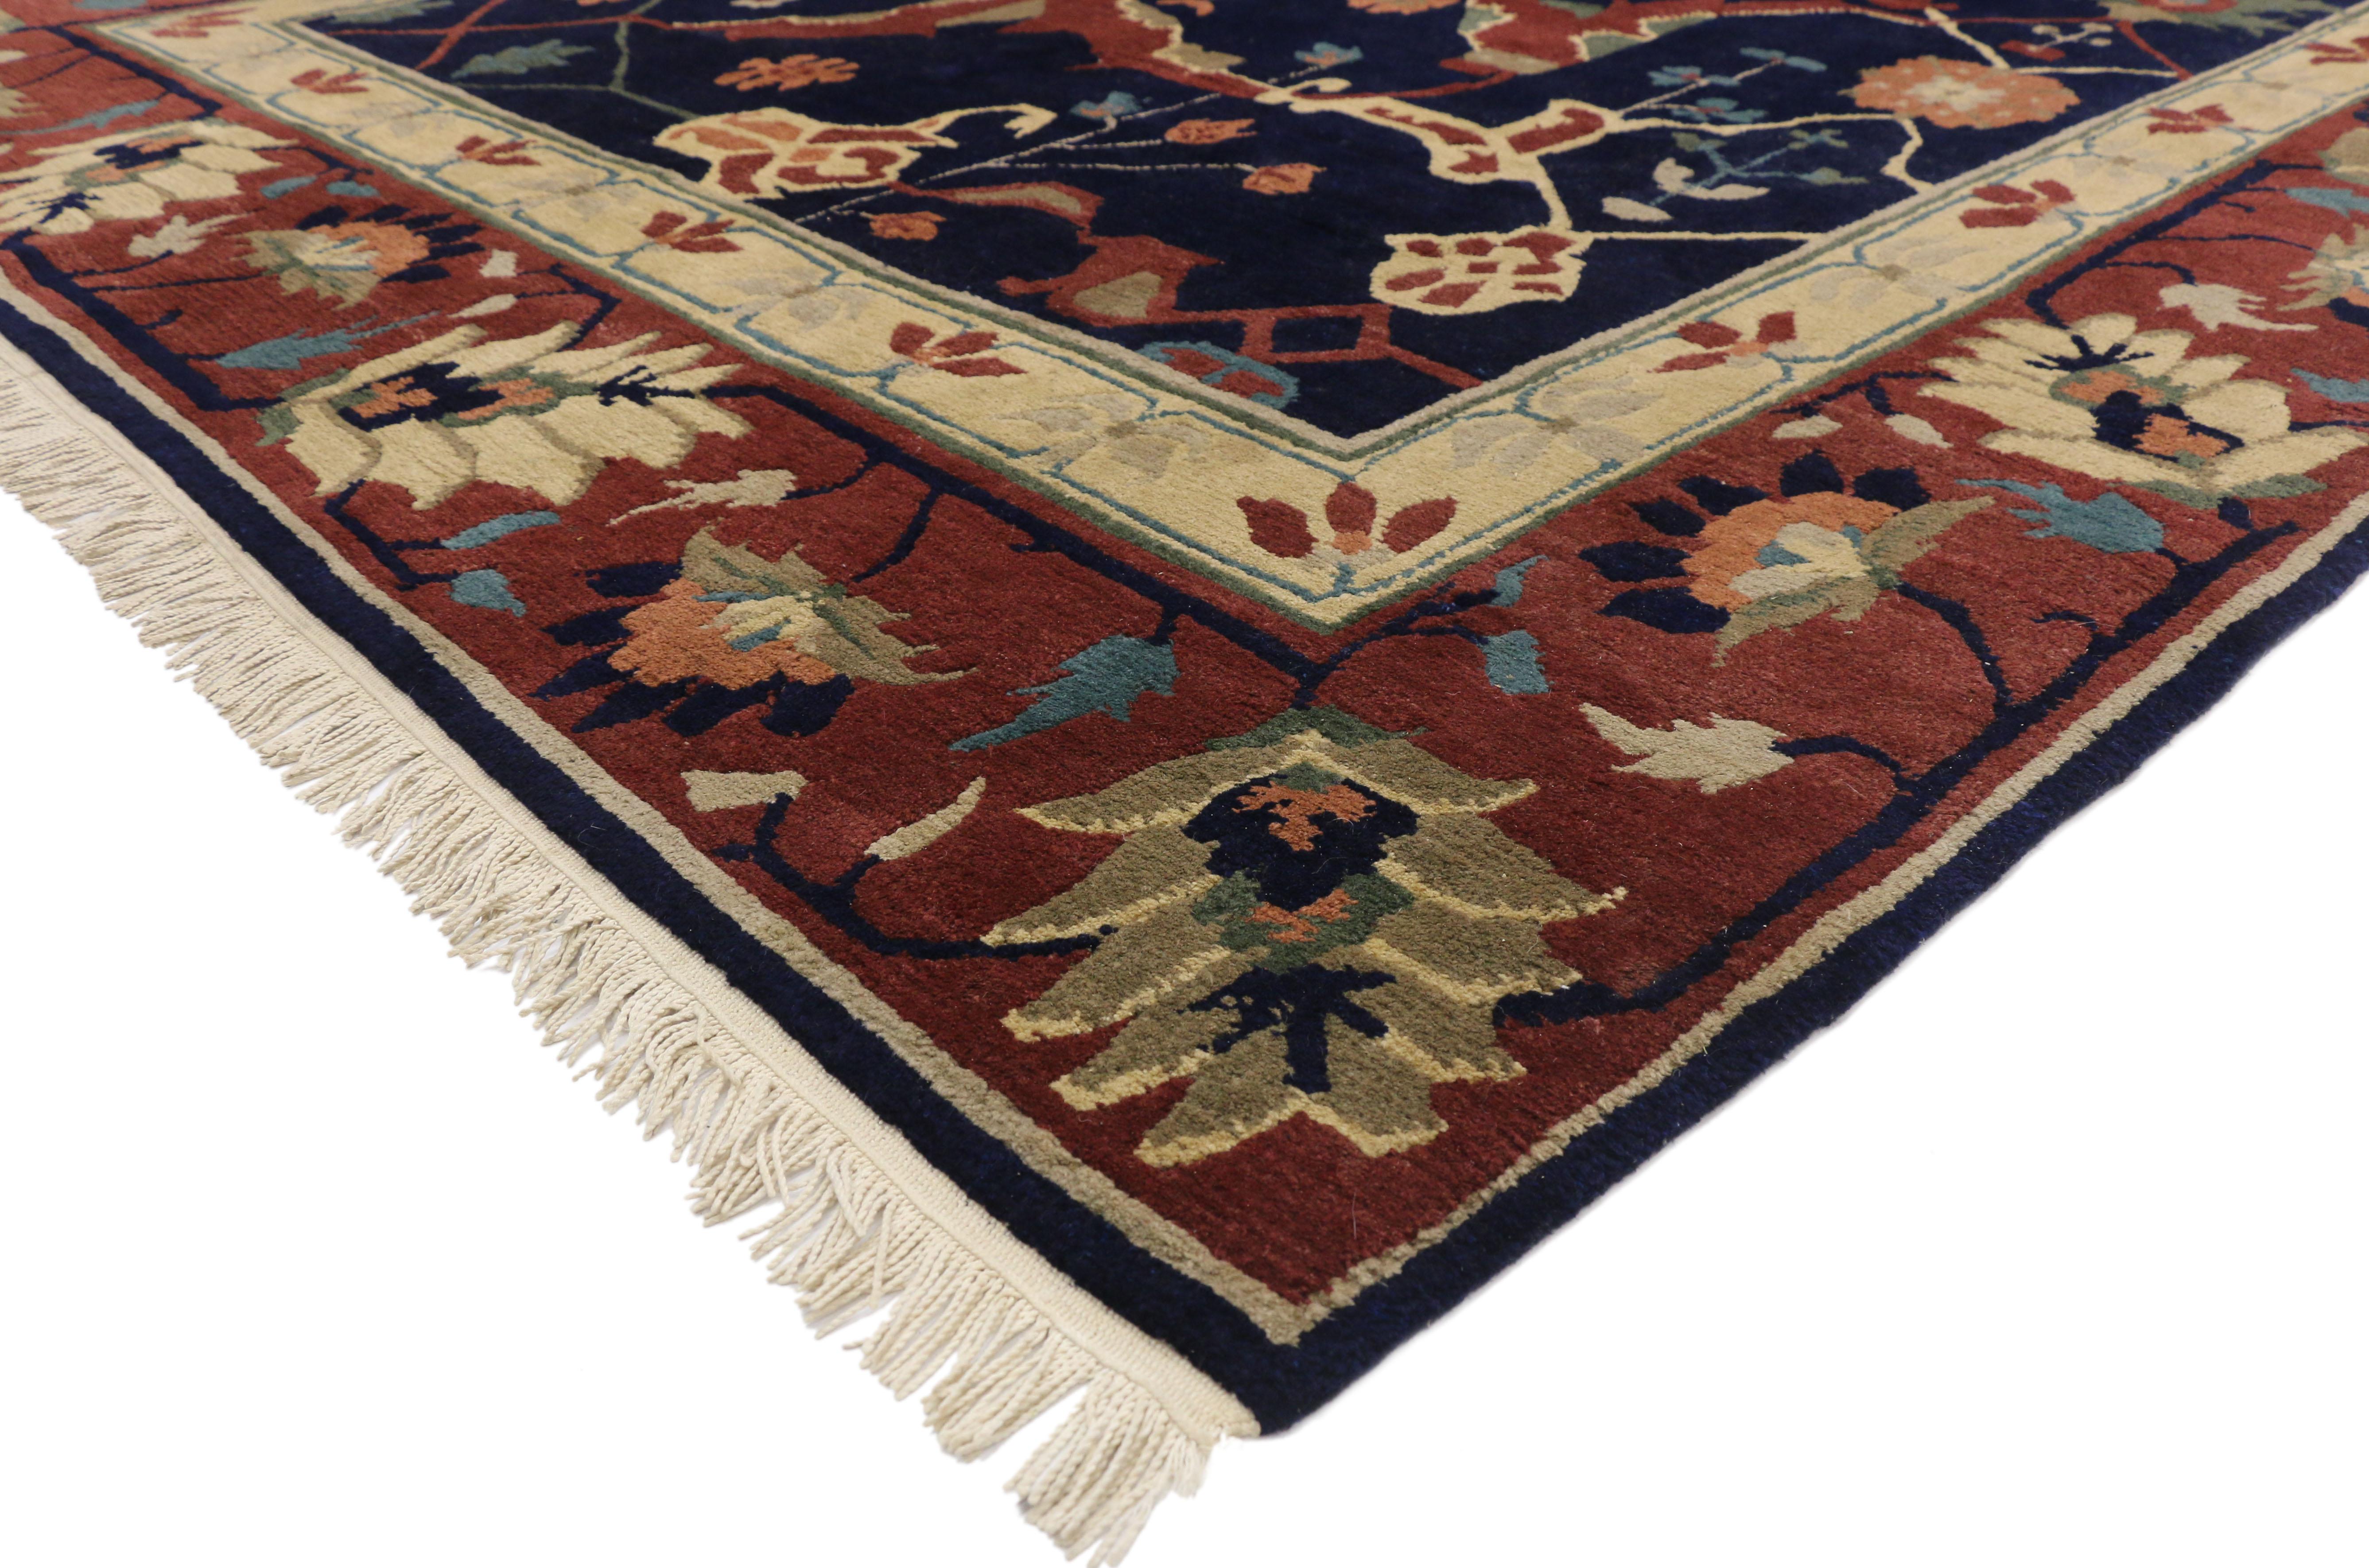 77262 Tapis tibétain vintage avec motif persan Serapi. Ce tapis tibétain vintage en laine noué à la main présente un magnifique motif persan Serapi sur un fond bleu encre. Les modèles de type 